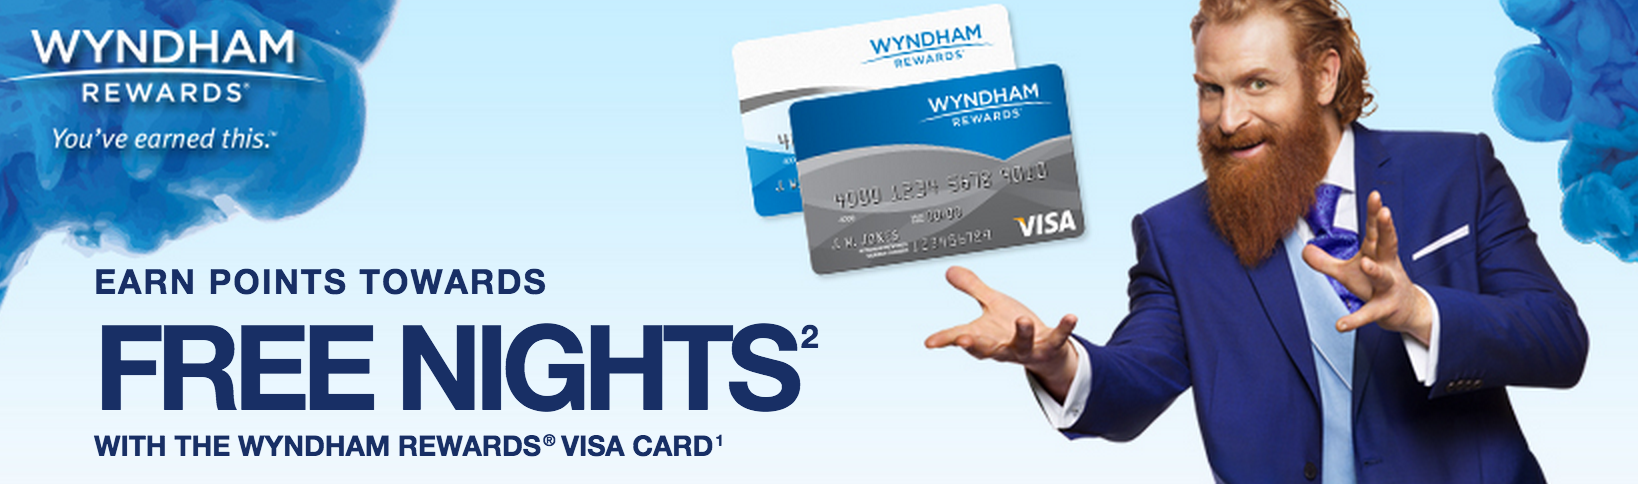 Wyndham credit card